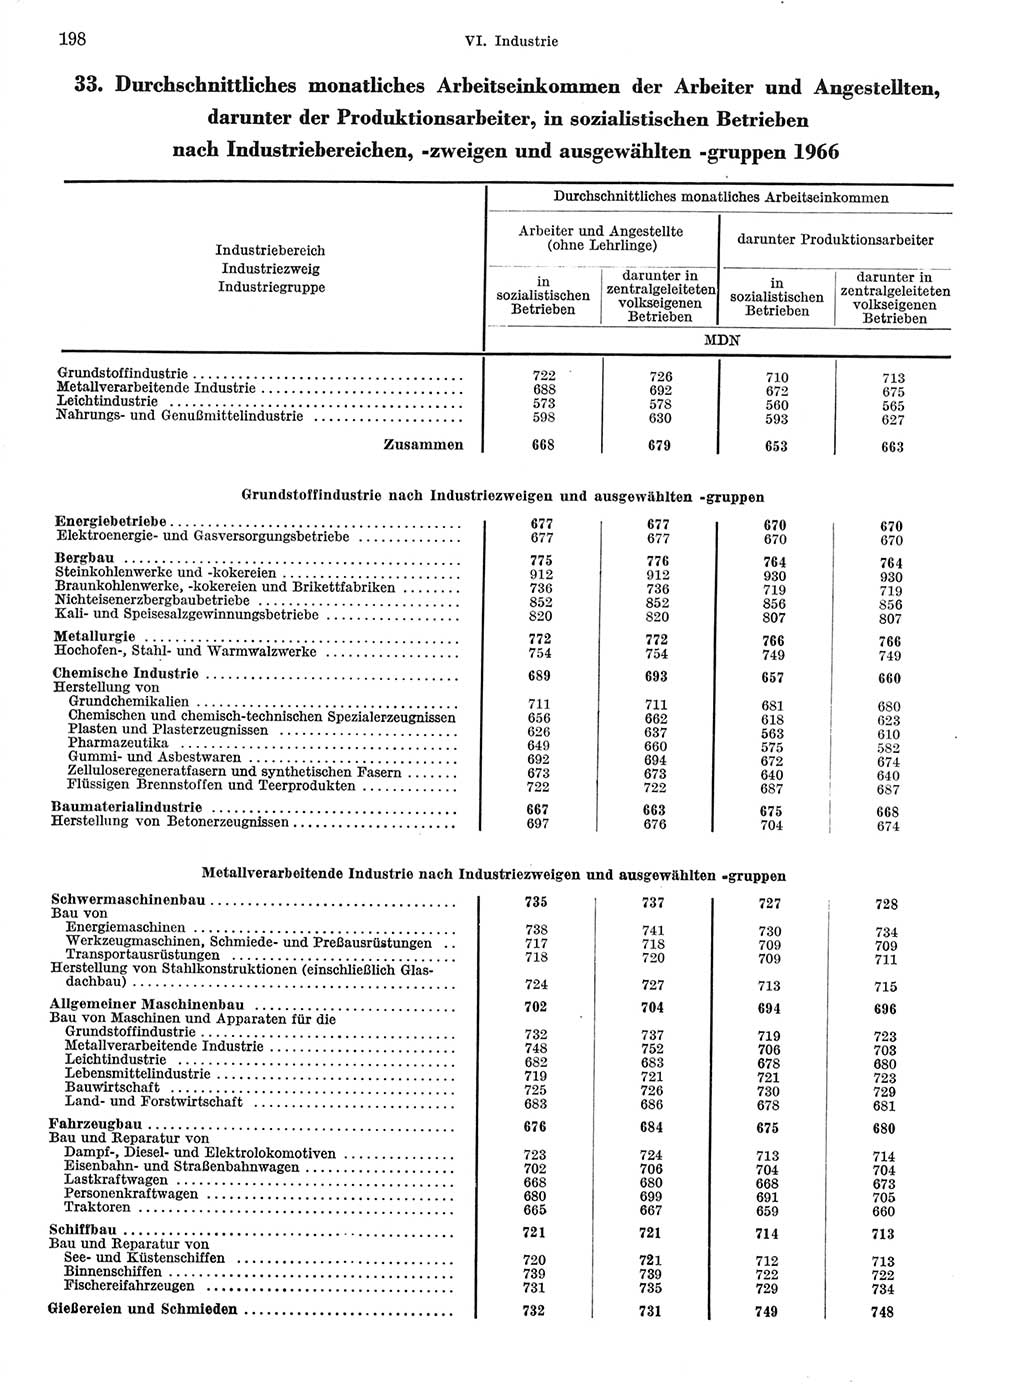 Statistisches Jahrbuch der Deutschen Demokratischen Republik (DDR) 1967, Seite 198 (Stat. Jb. DDR 1967, S. 198)